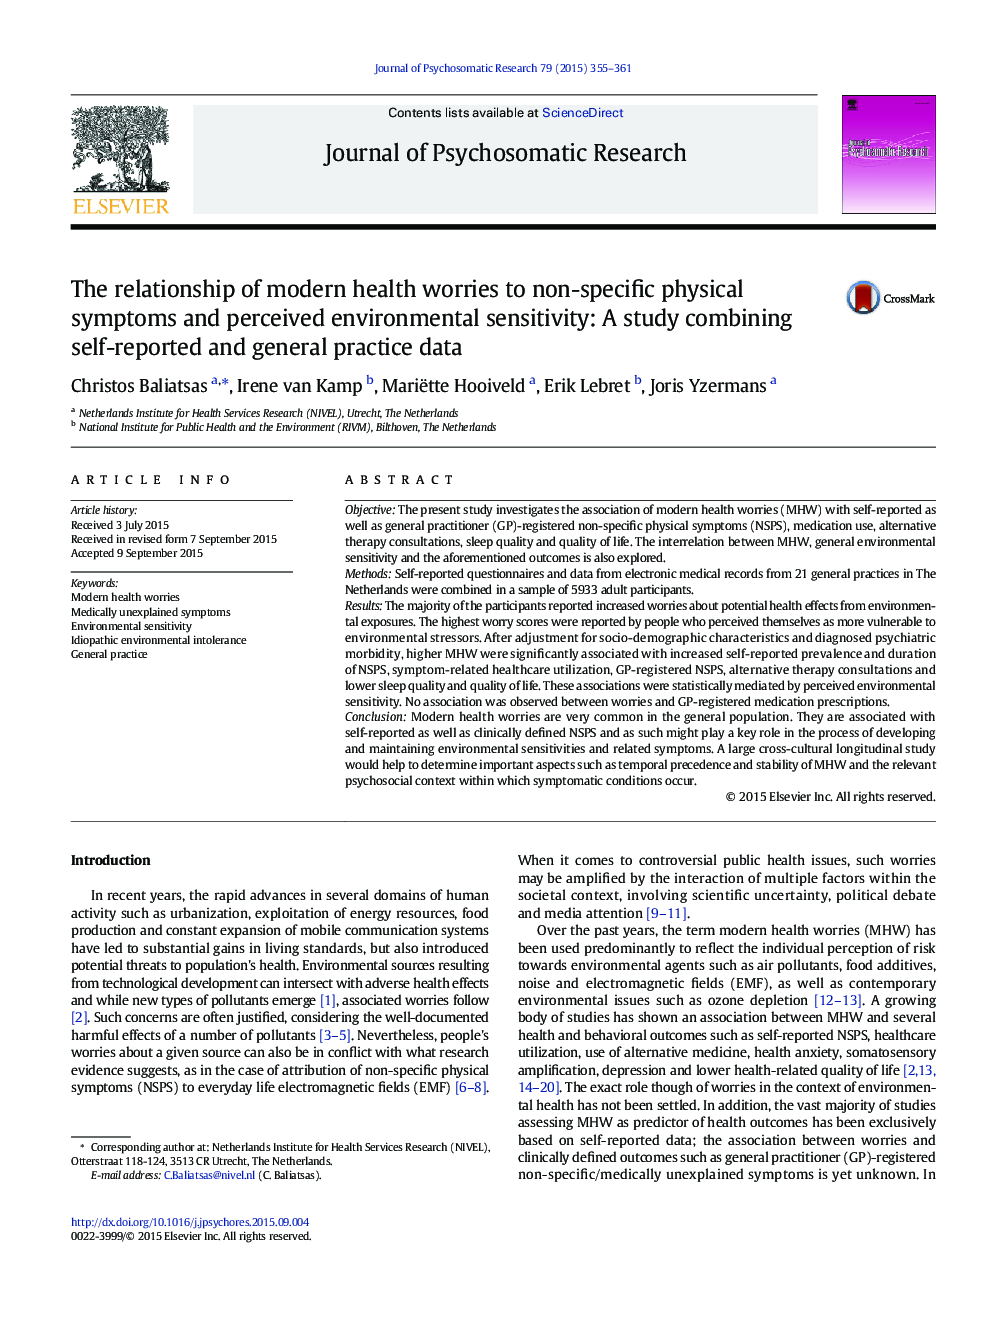 رابطه نگرانی سلامت مدرن با علائم جسمی و حساسیت محیطی درک نشده: مطالعه ای که ترکیبی از داده های خود گزارش شده و اطلاعات تمرین عمومی است 